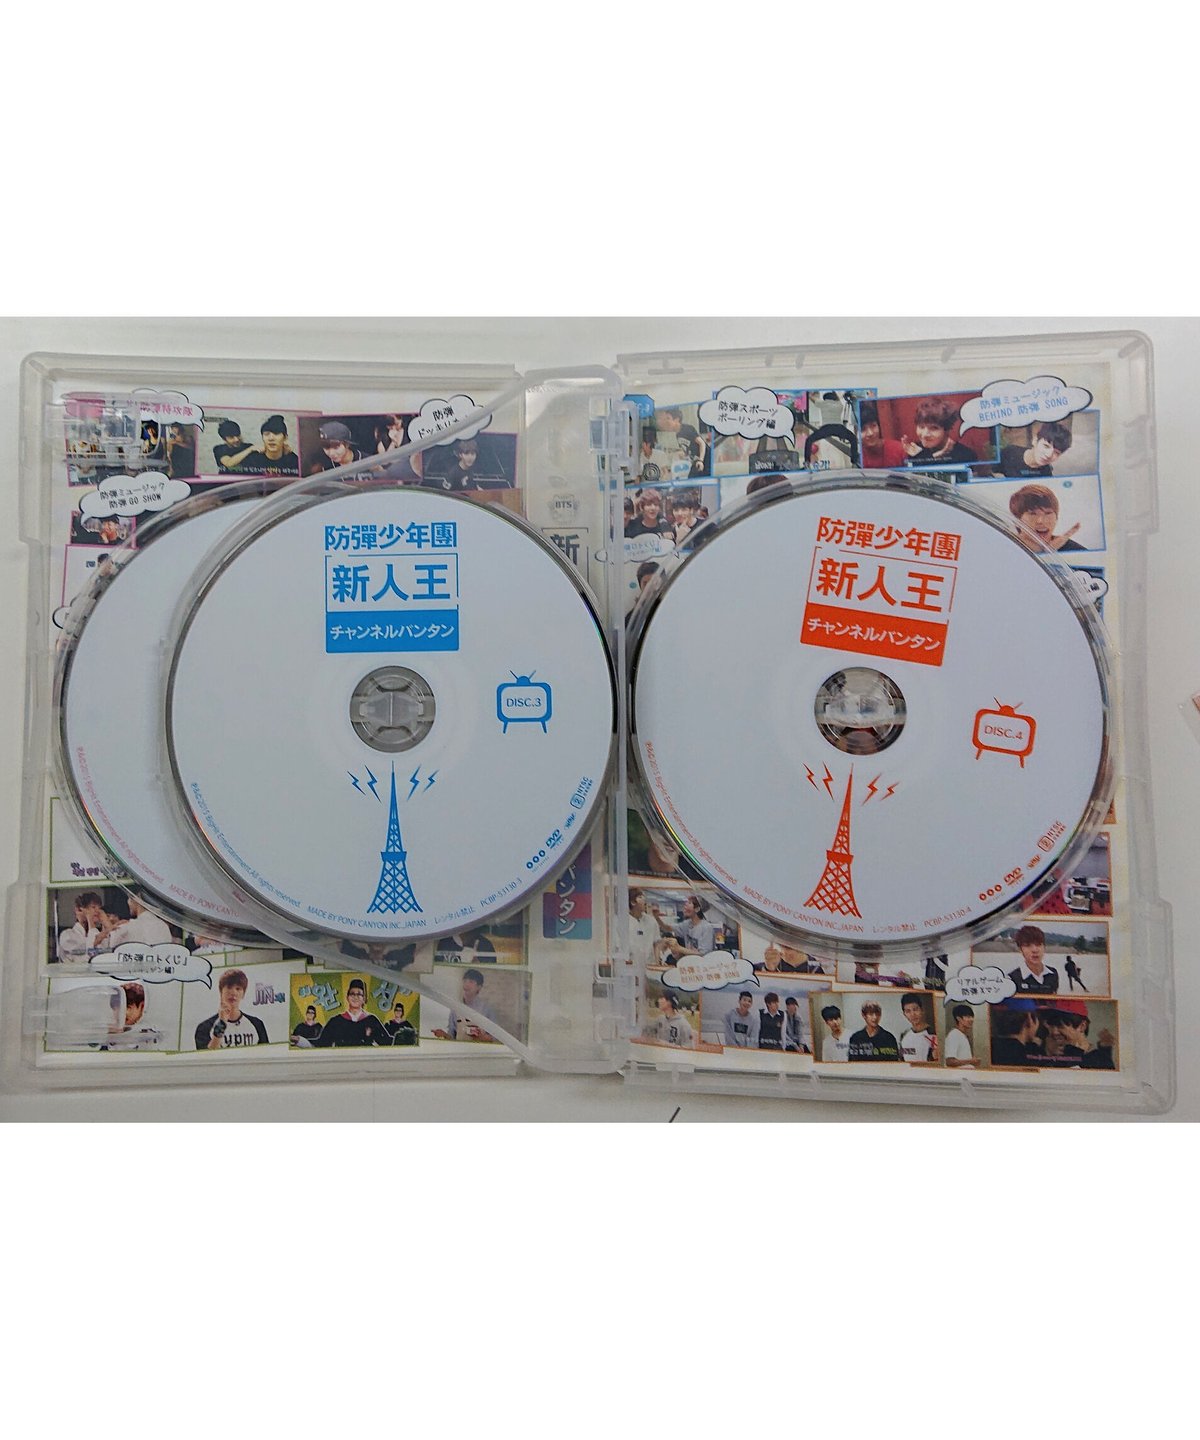 新人王防弾少年団-チャンネルバンタン DVD